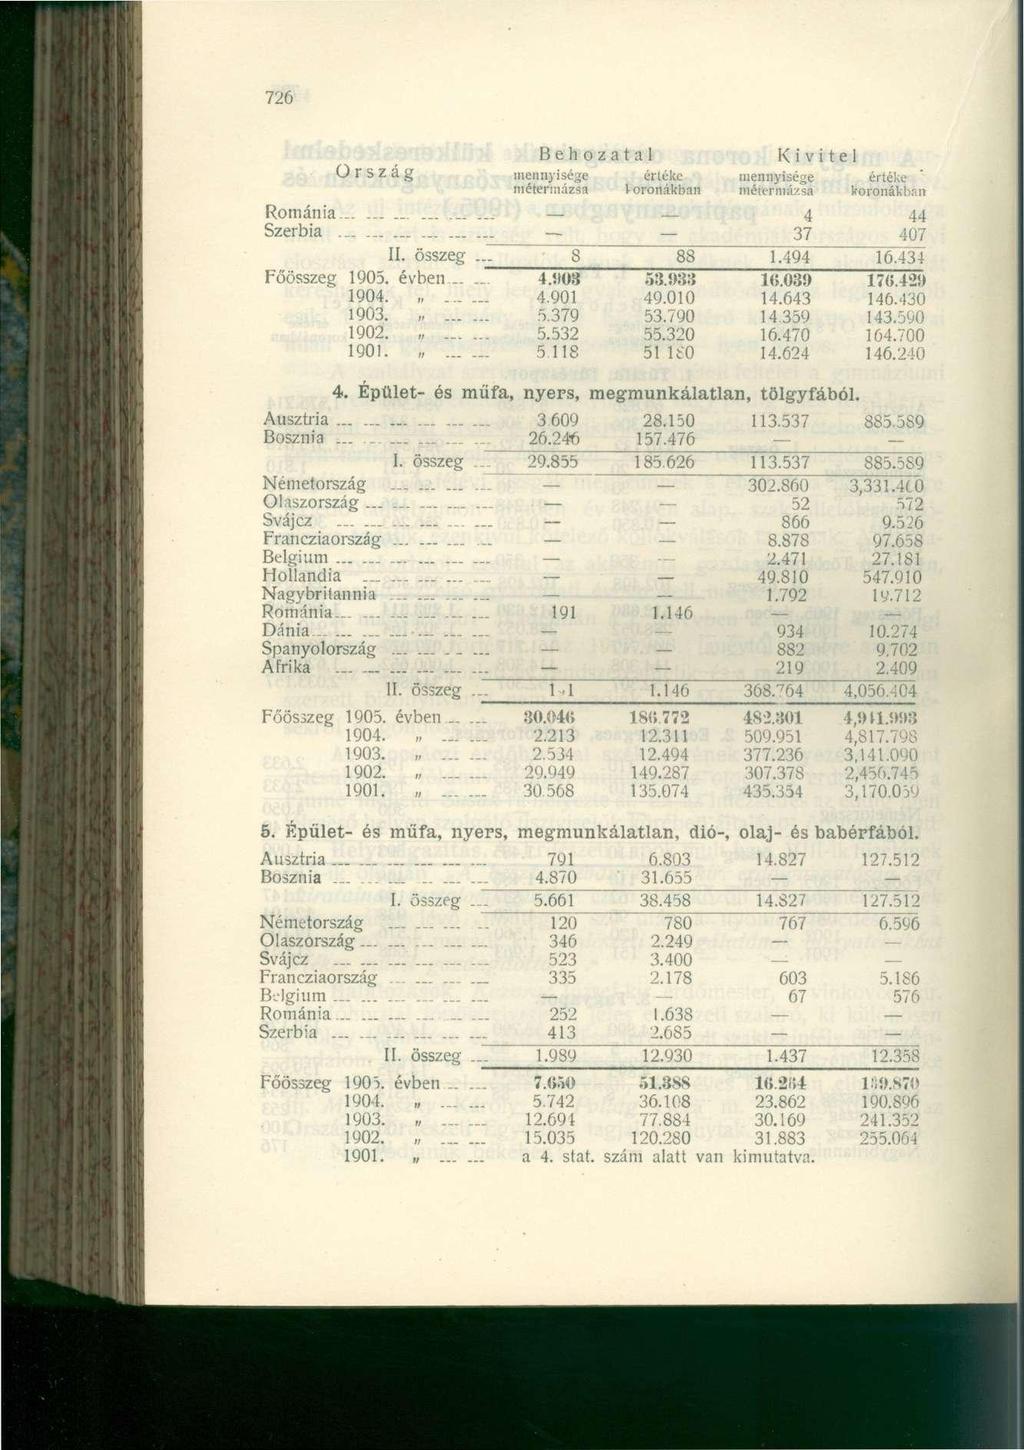 726 Ország mennyisége értéke mennyisége értéke métermázsa 1 oronákban métermázsa koronákban Románia............ 4 44 Szerbia - 37 407 II. összeg. SS 88 1.494 16.434 Főösszeg 1905. évben 4.1(03 53.